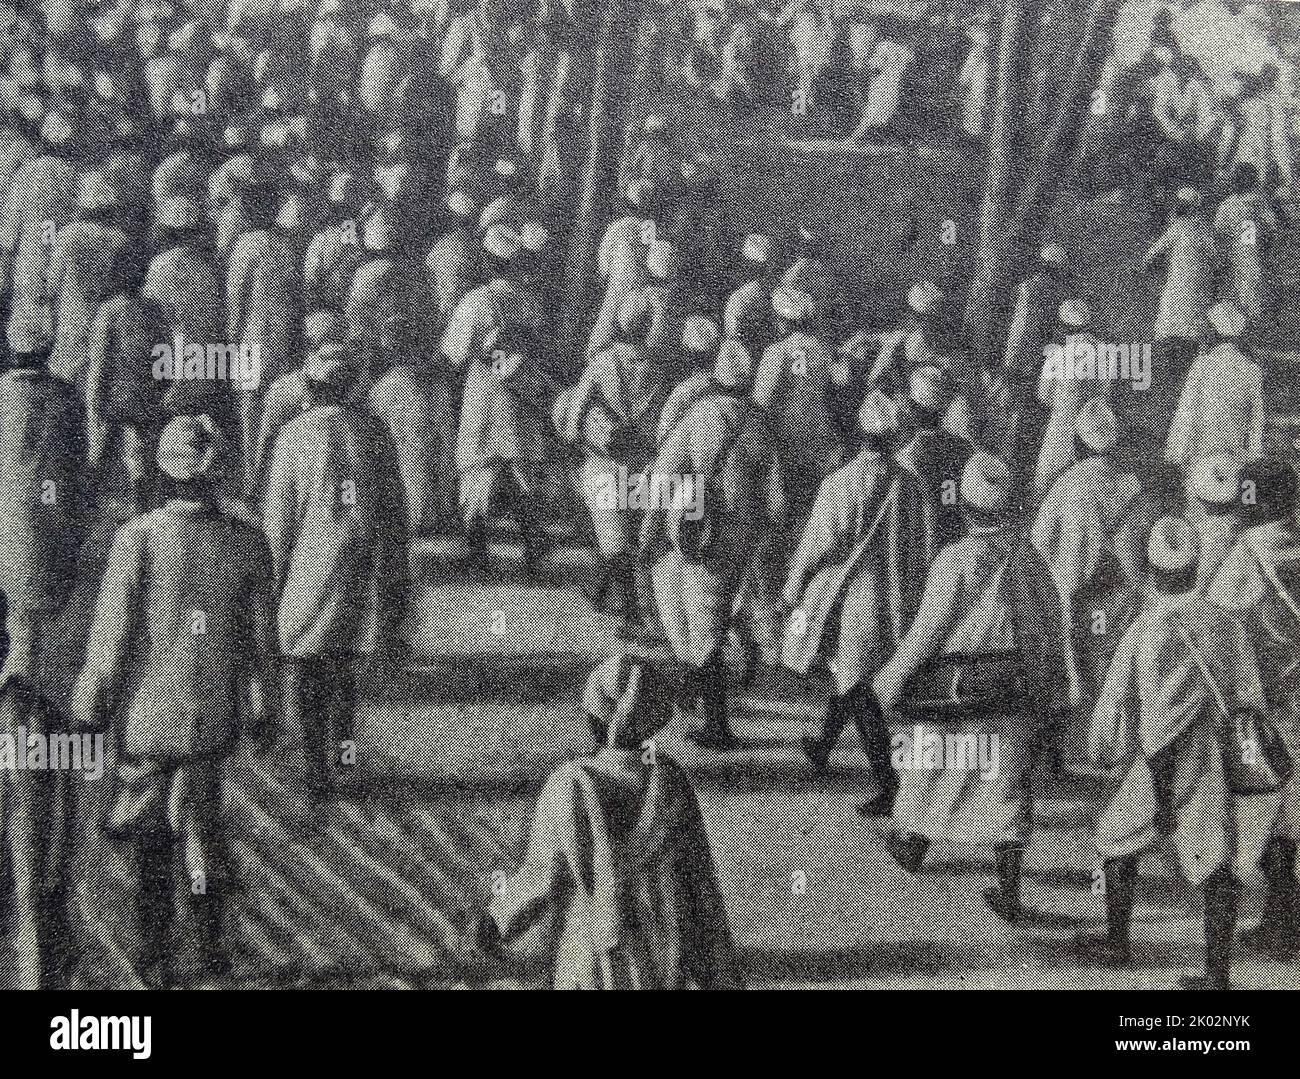 La Marcha de la Sal, también conocida como la Sal Satyagraha, fue un acto de desobediencia civil no violenta en la India colonial dirigido por Mohandas Karamchand Gandhi. La marcha de 24 días duró del 12 de marzo de 1930 al 6 de abril de 1930 como una campaña de acción directa de resistencia fiscal y protesta no violenta contra el monopolio británico de la sal. Foto de stock